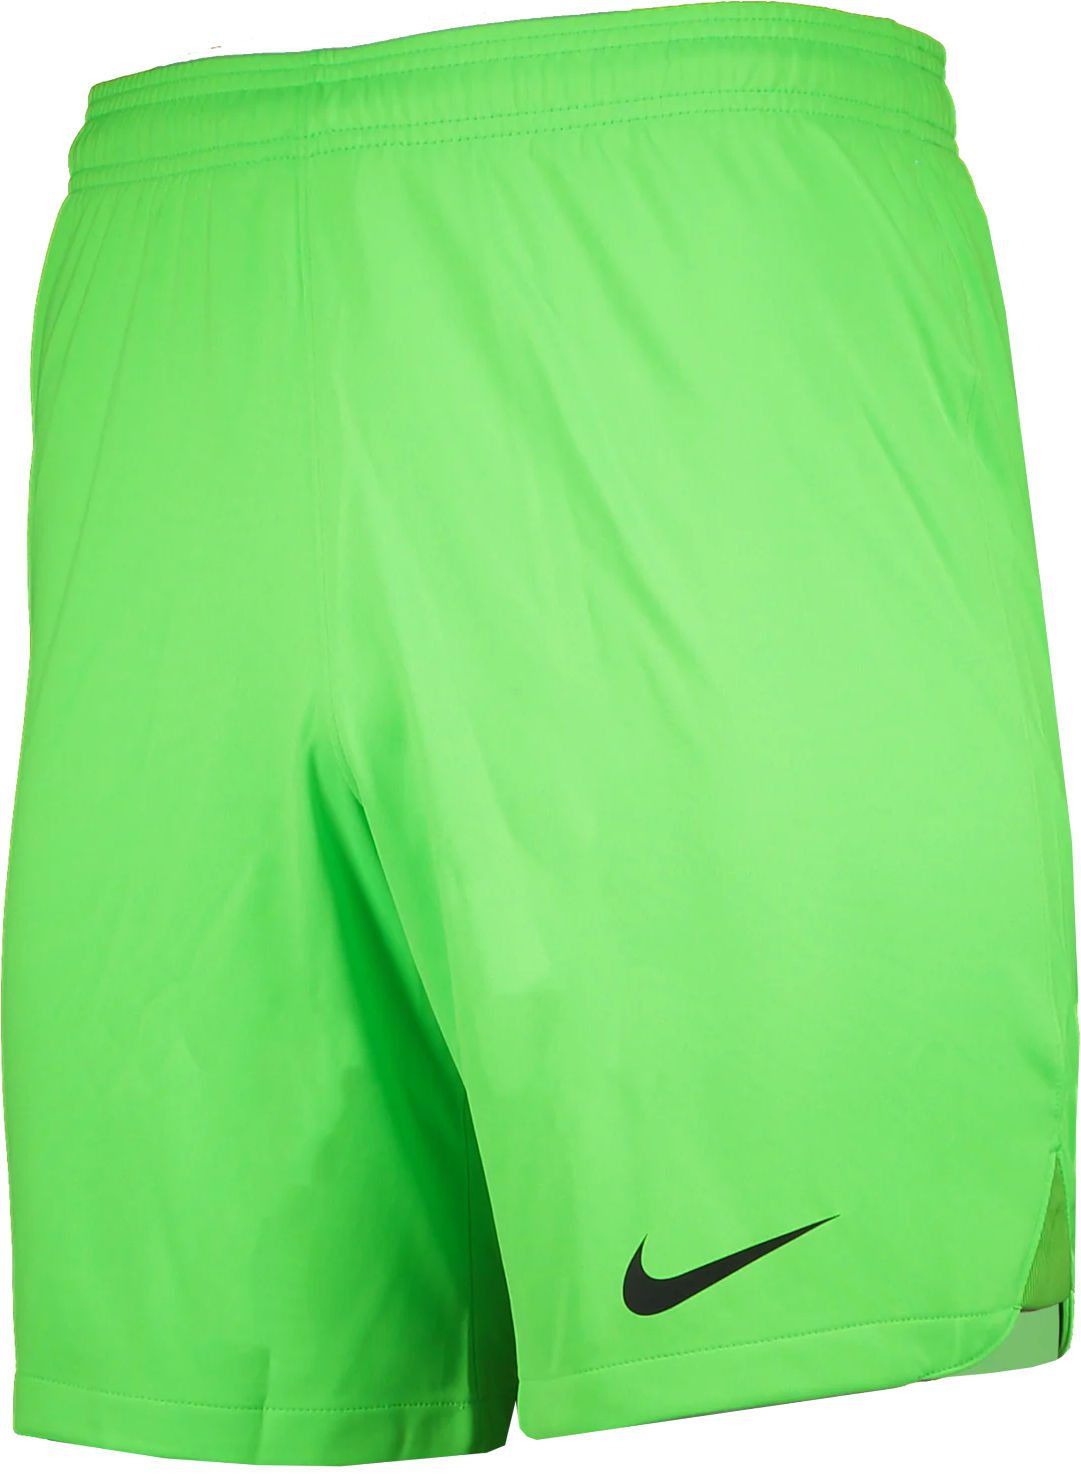 Sorturi Nike Foundation Goalkeeper Shorts